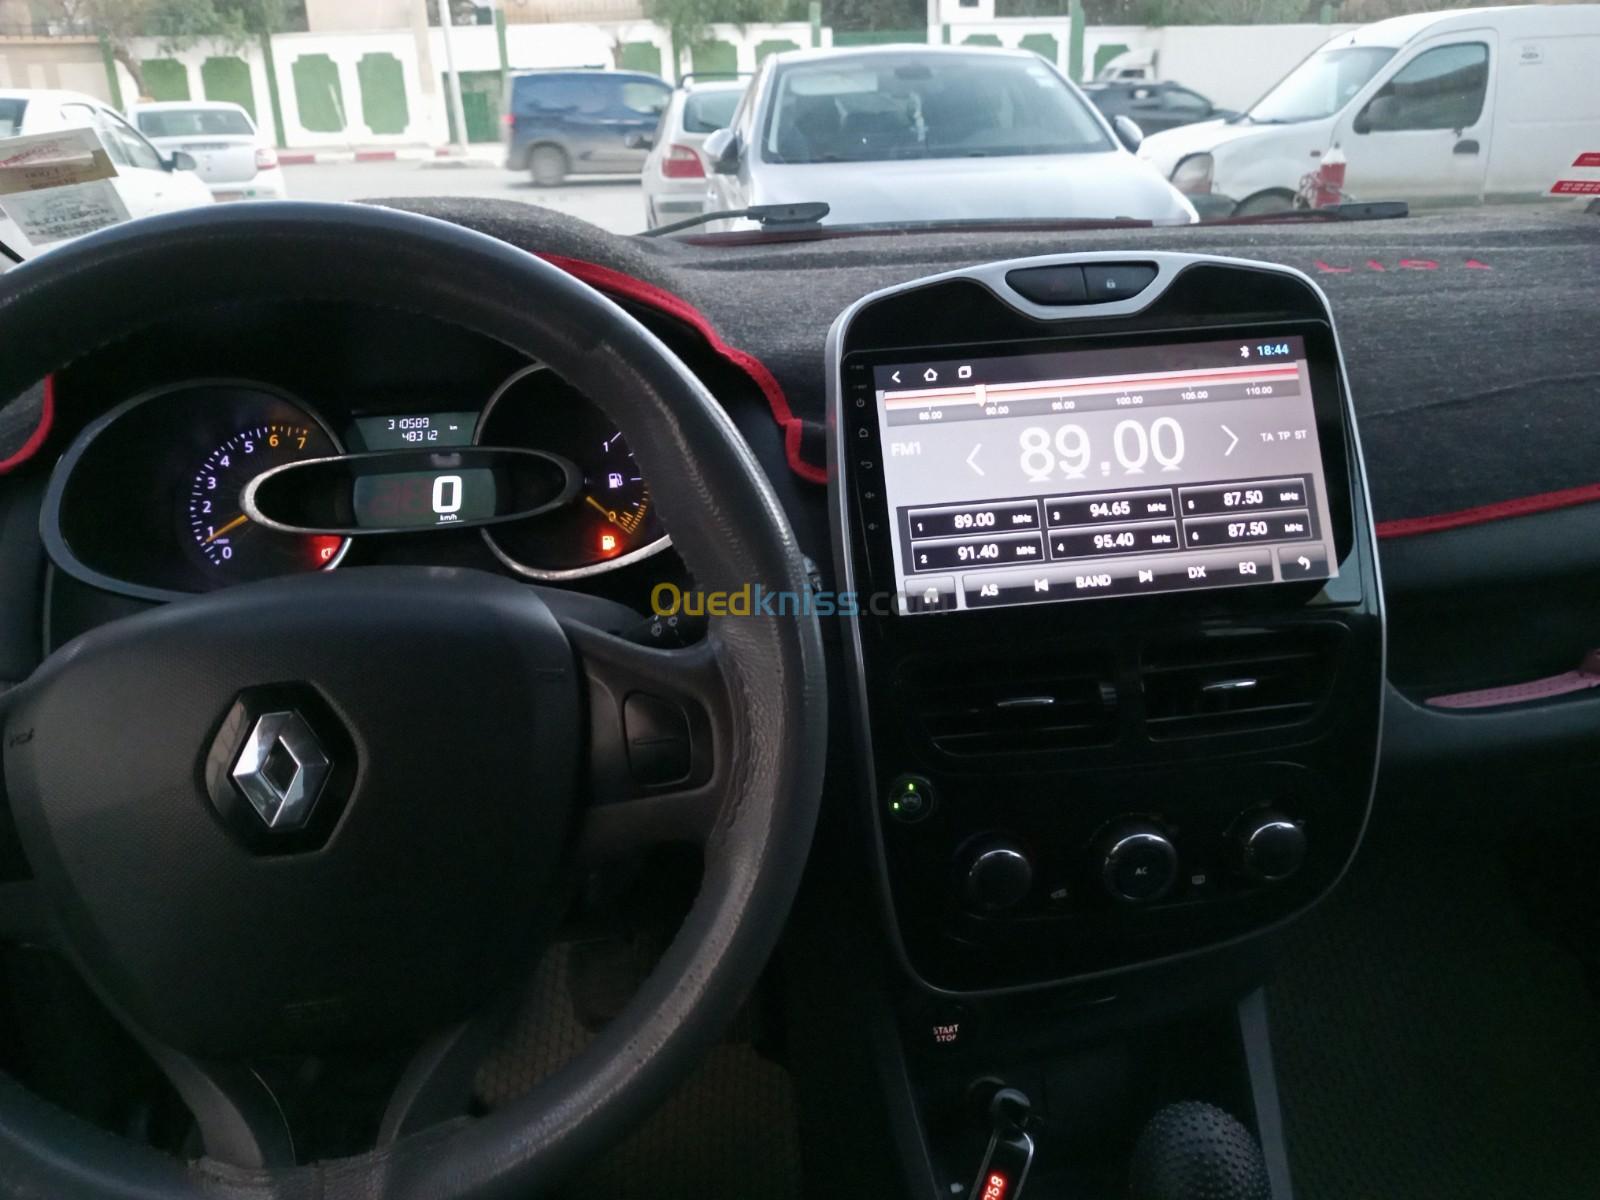 Renault Clio 4 2013 Dynamique plus